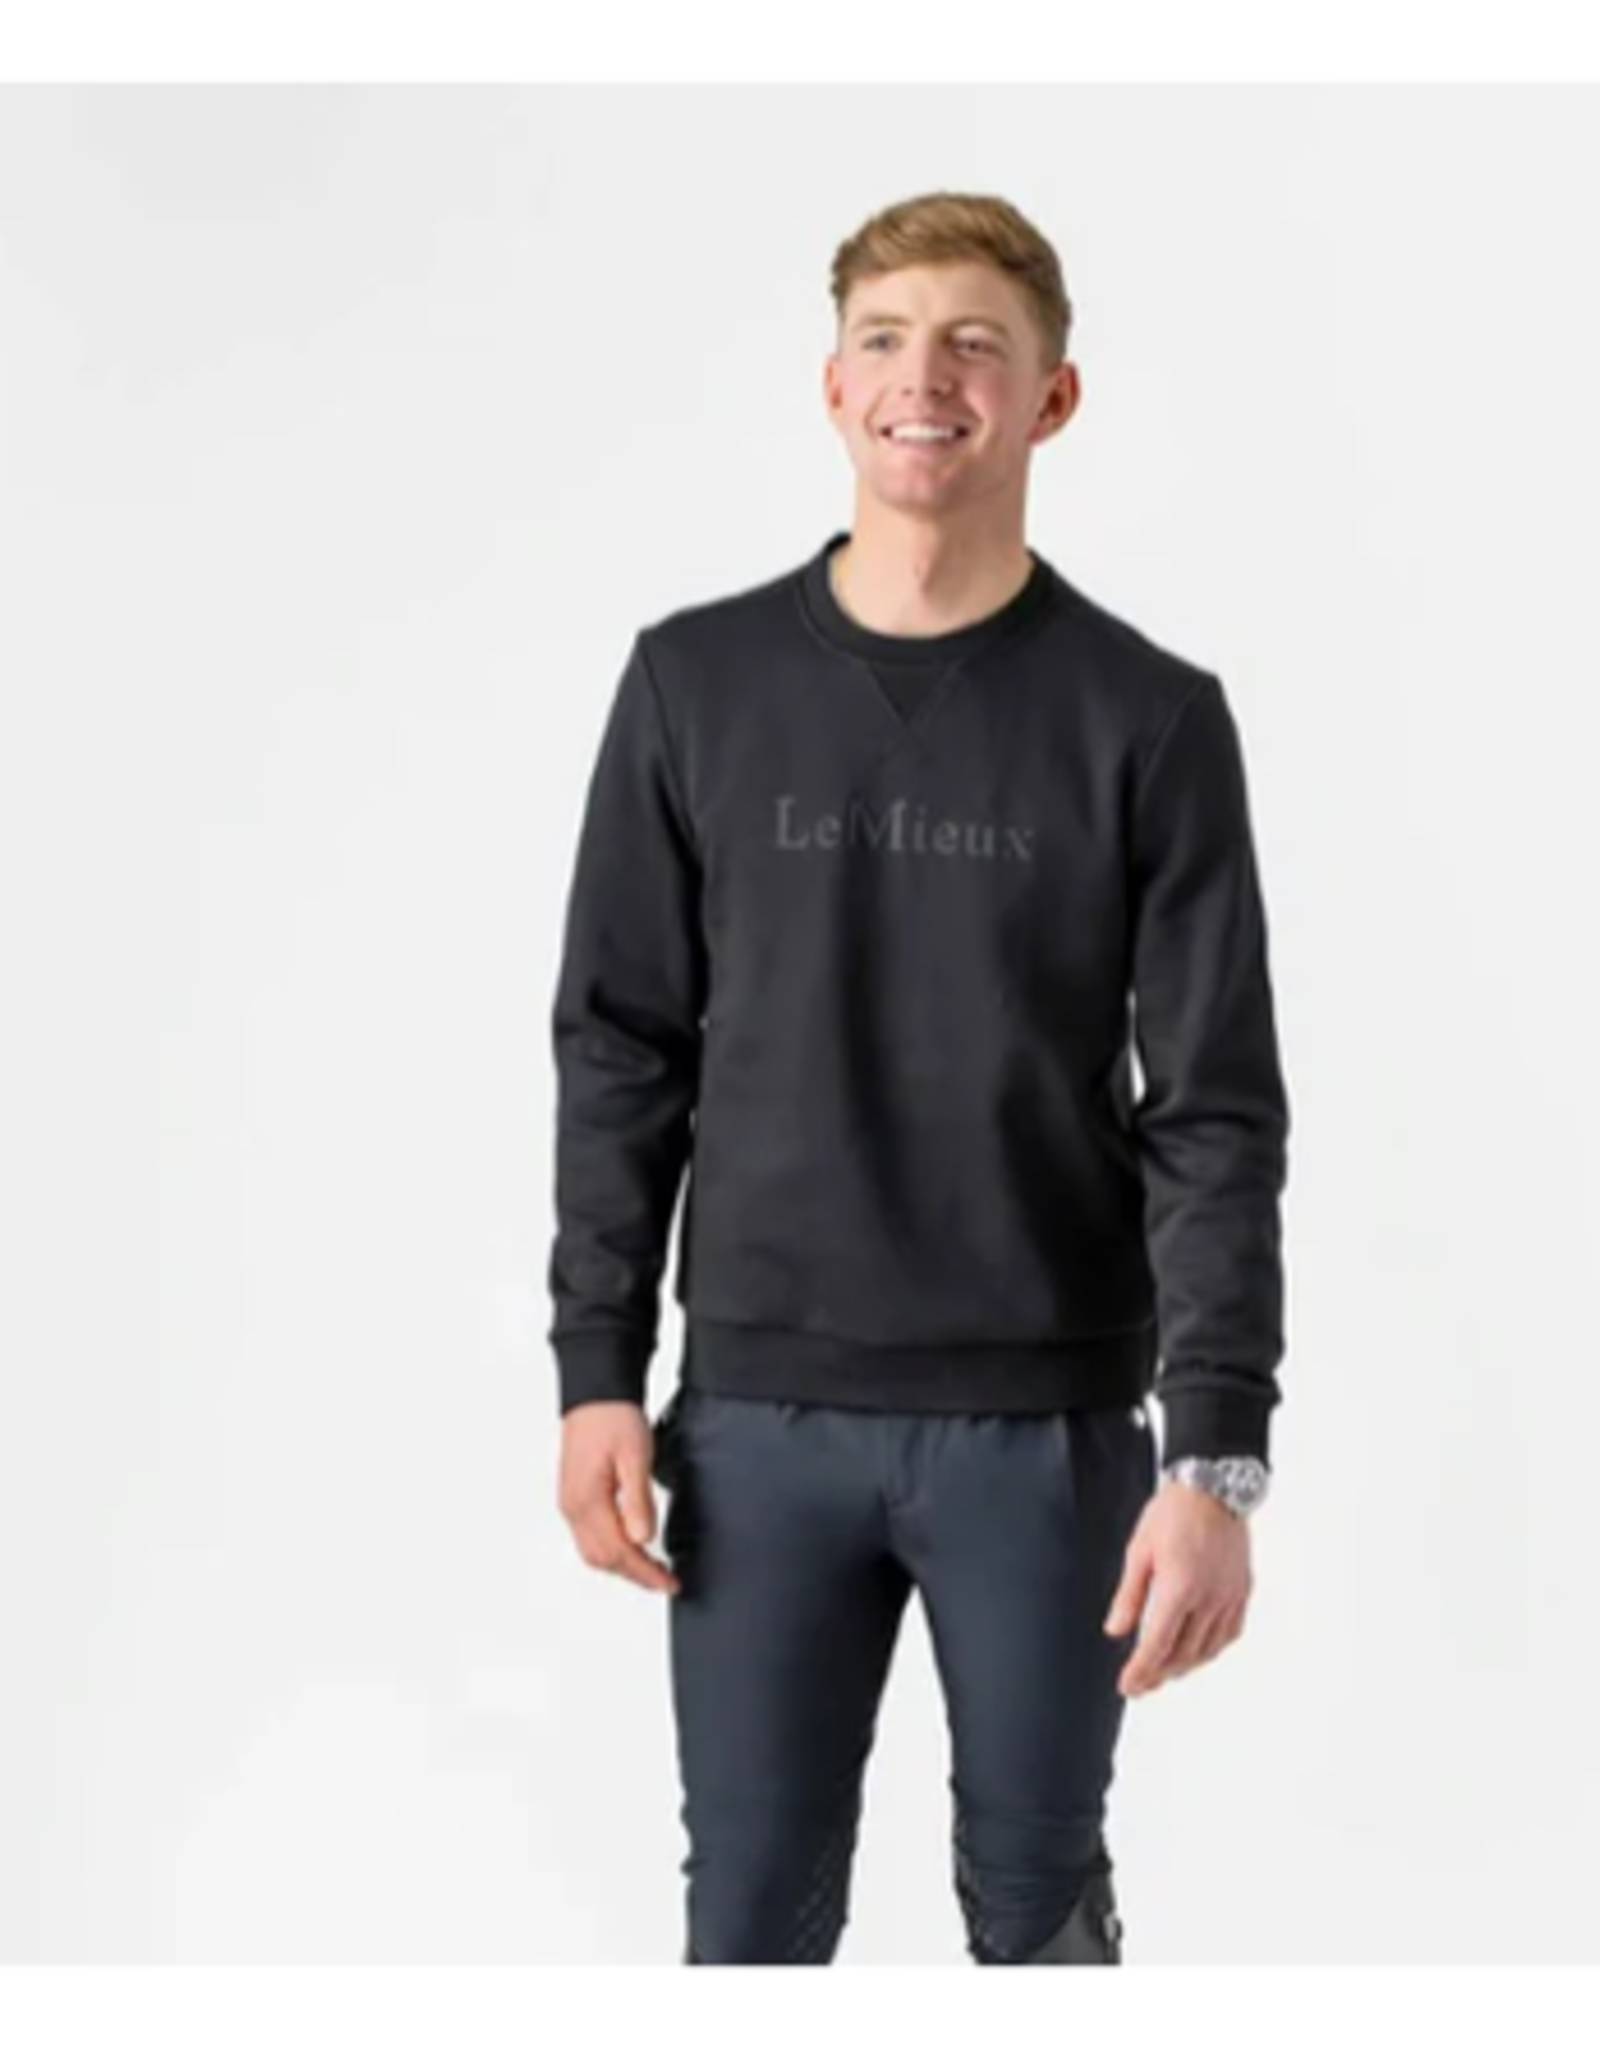 Lemieux LeMieux Mens' Elite Sweater